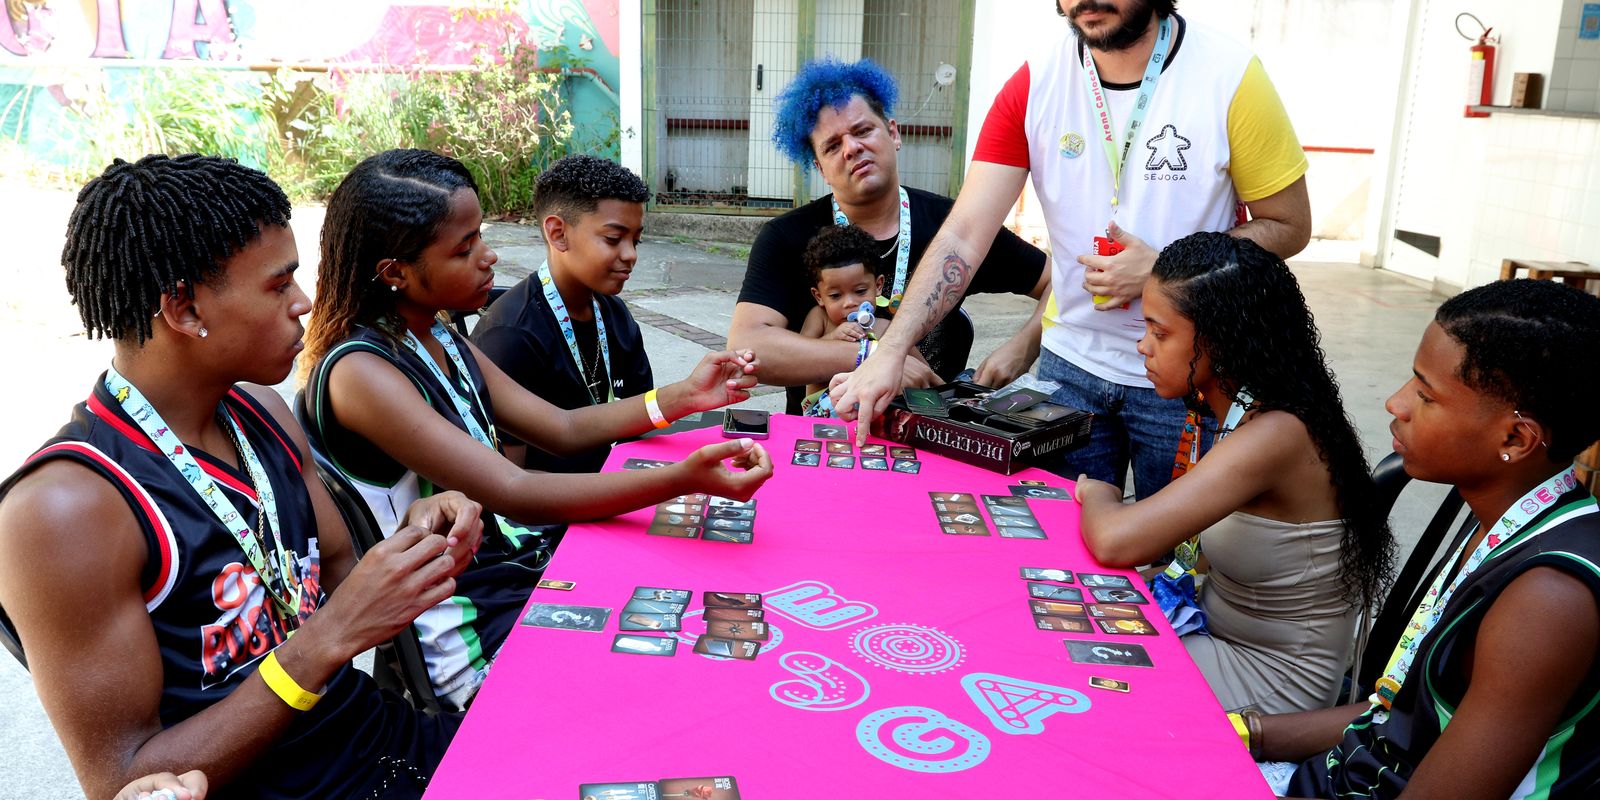 SeJoga, evento de jogos promove inclusão e diversidade nas periferias